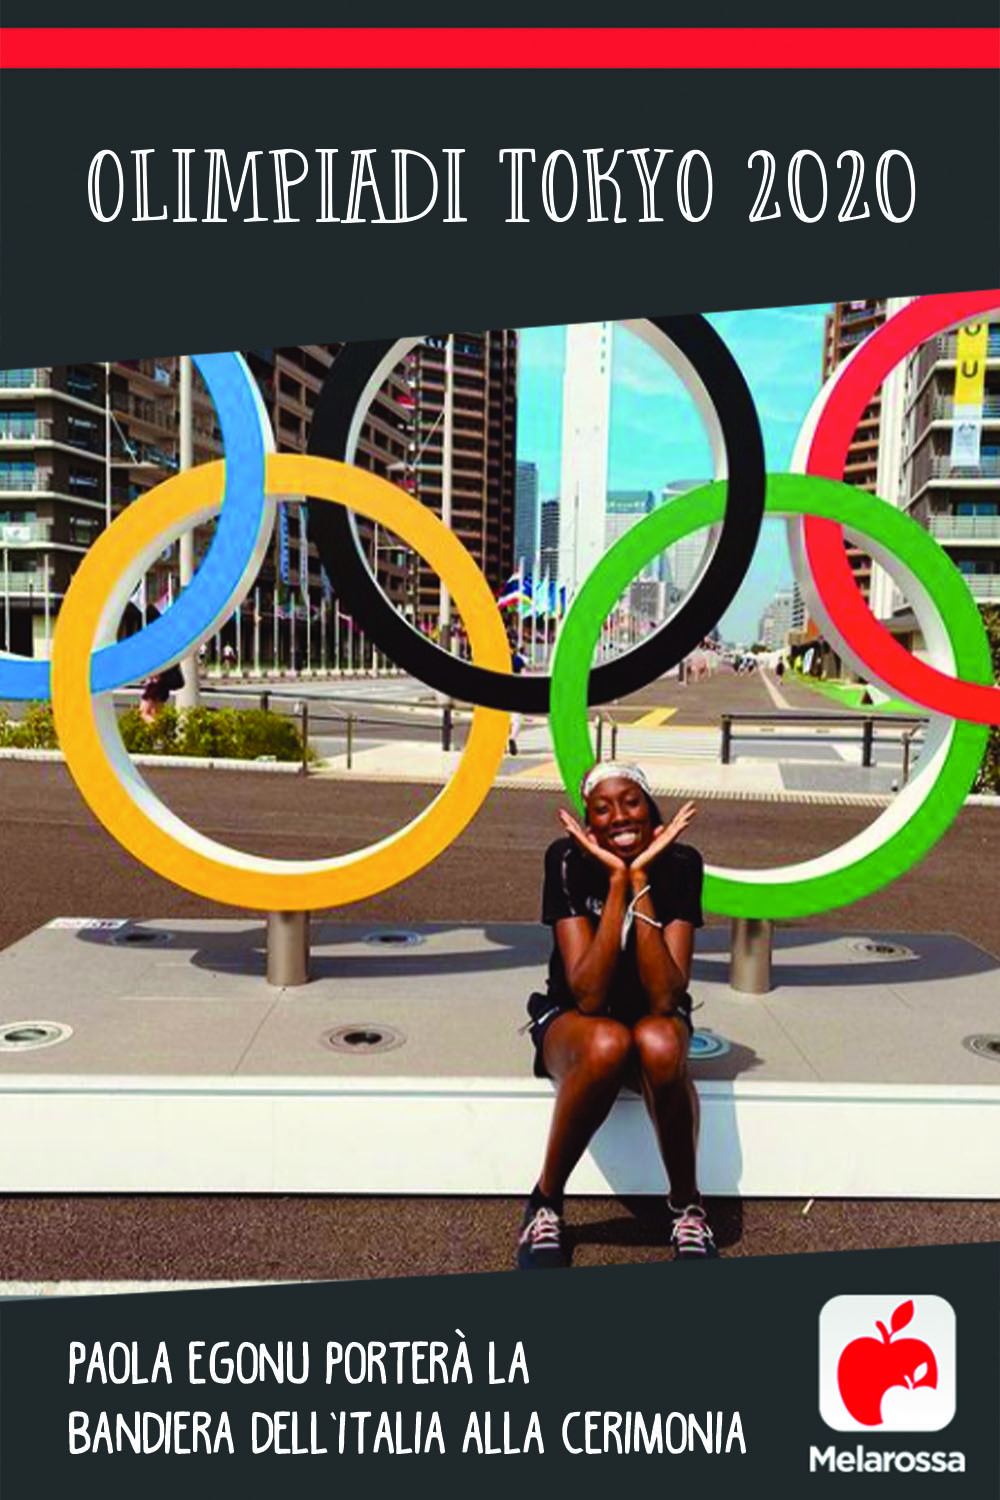 Olimpiadi Tokyo 2020: Paola Egonu porterà la bandiera dell’Italia alla cerimonia di apertura